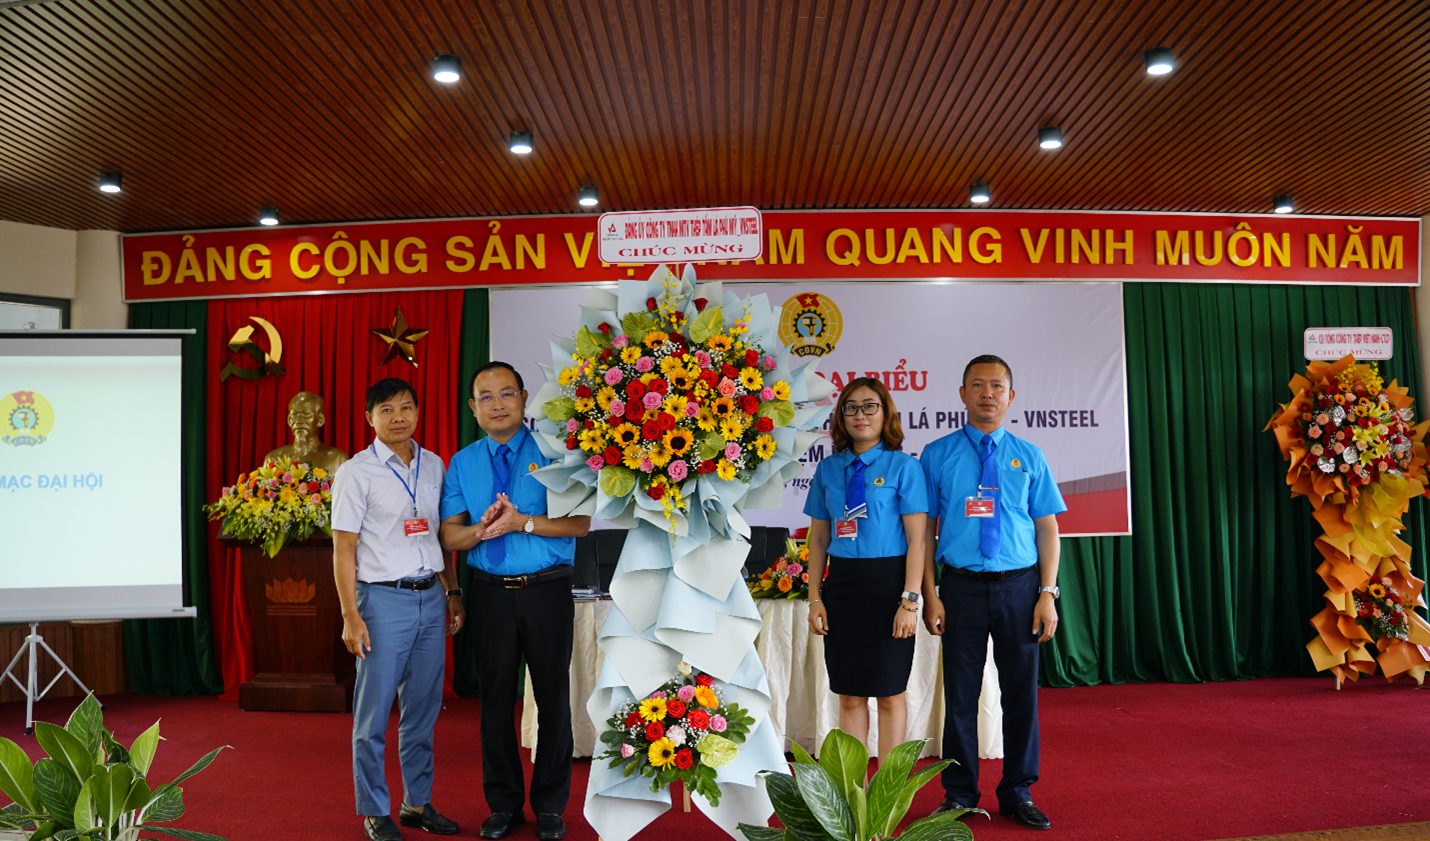 Đồng chí Nguyễn Tấn Hoành- Phó Bí thư Đảng ủy, Tổng Giám đốc Công ty tặng hoa chúc mừng Đại hội